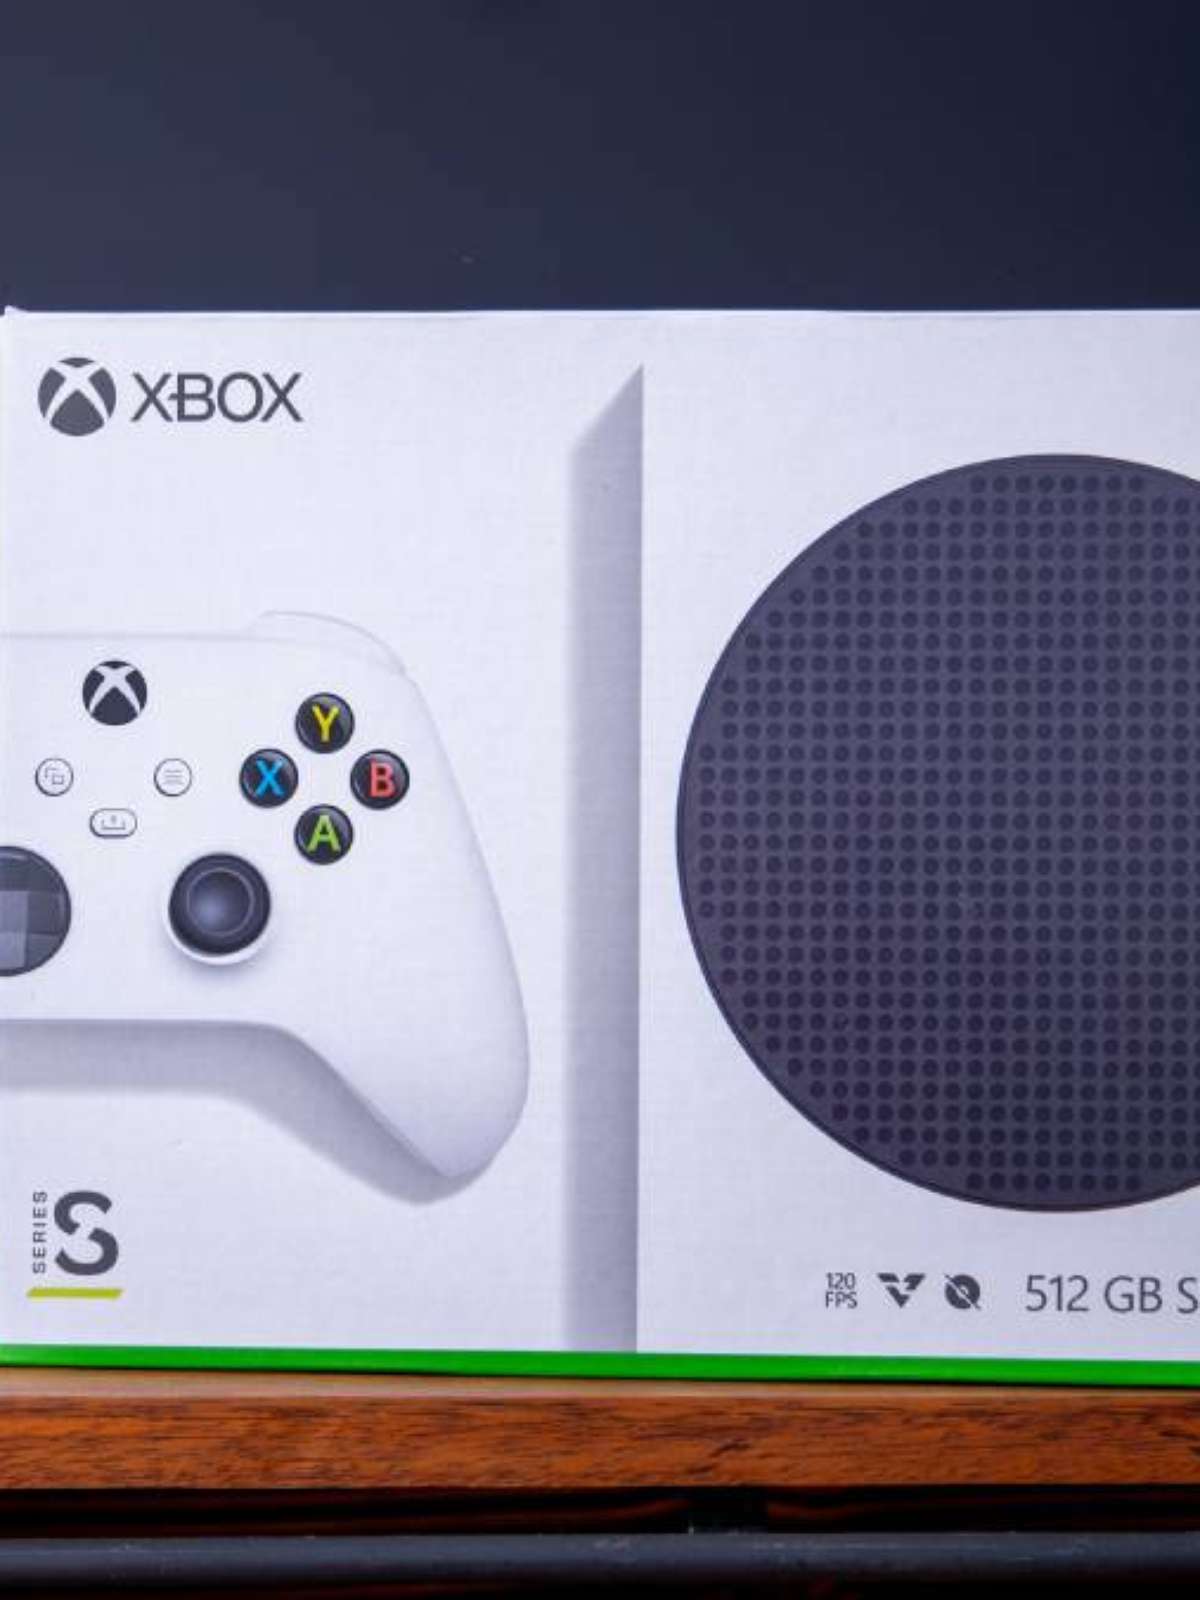 Seguramos o quanto deu, diz Microsoft sobre preço do Xbox Series S